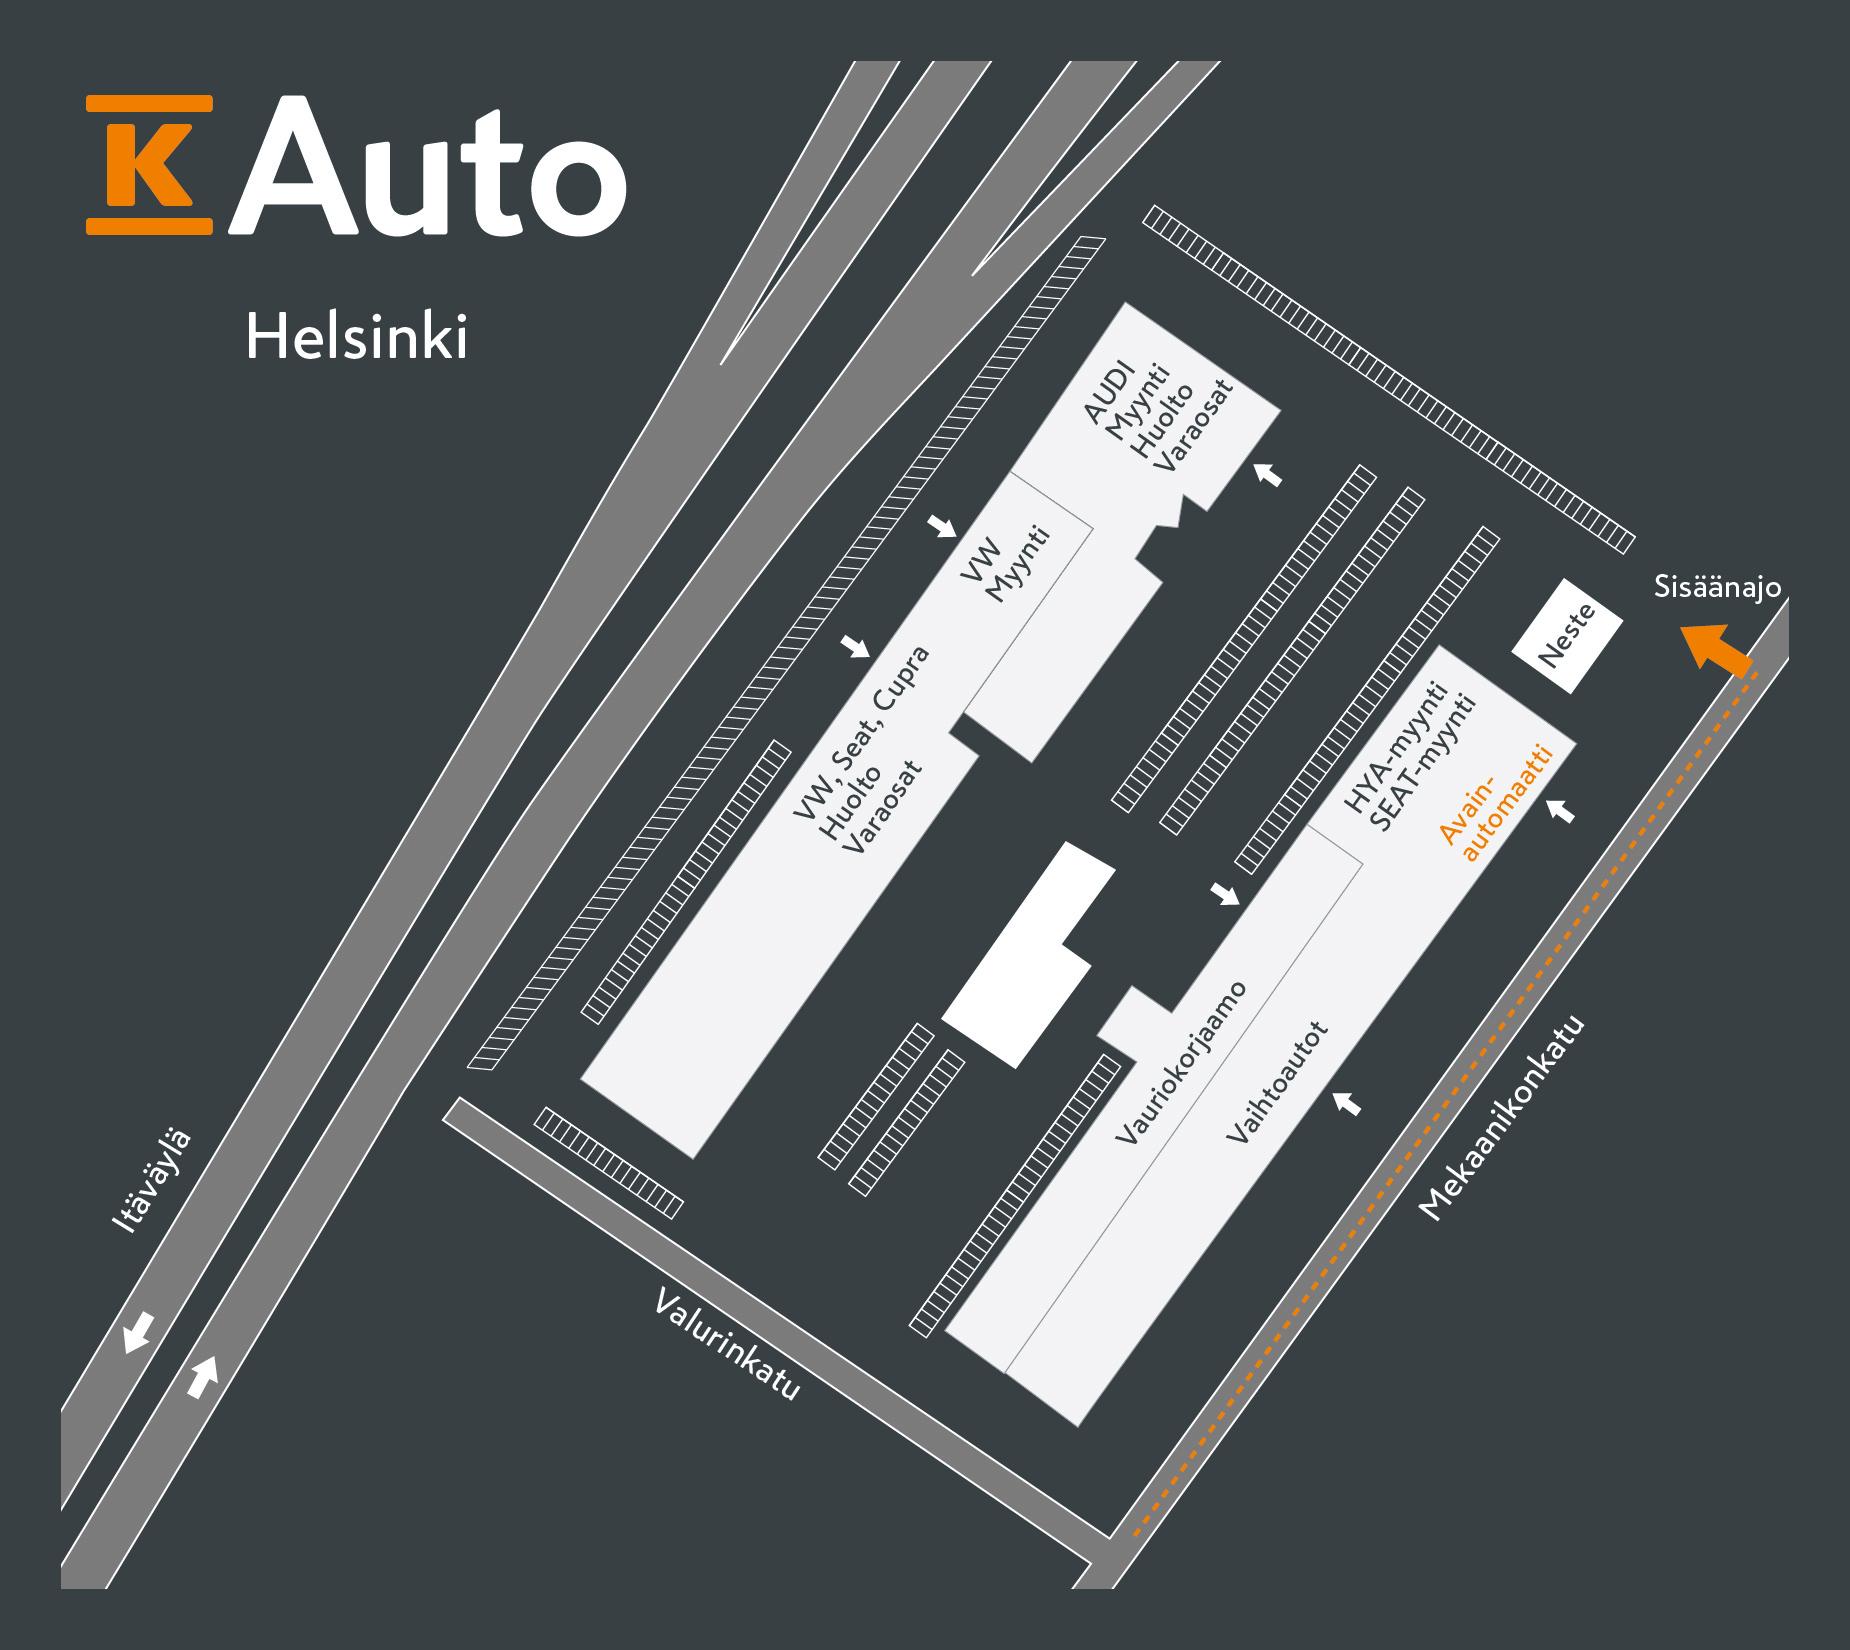 K-Auto Helsinki - Avainautomaatti